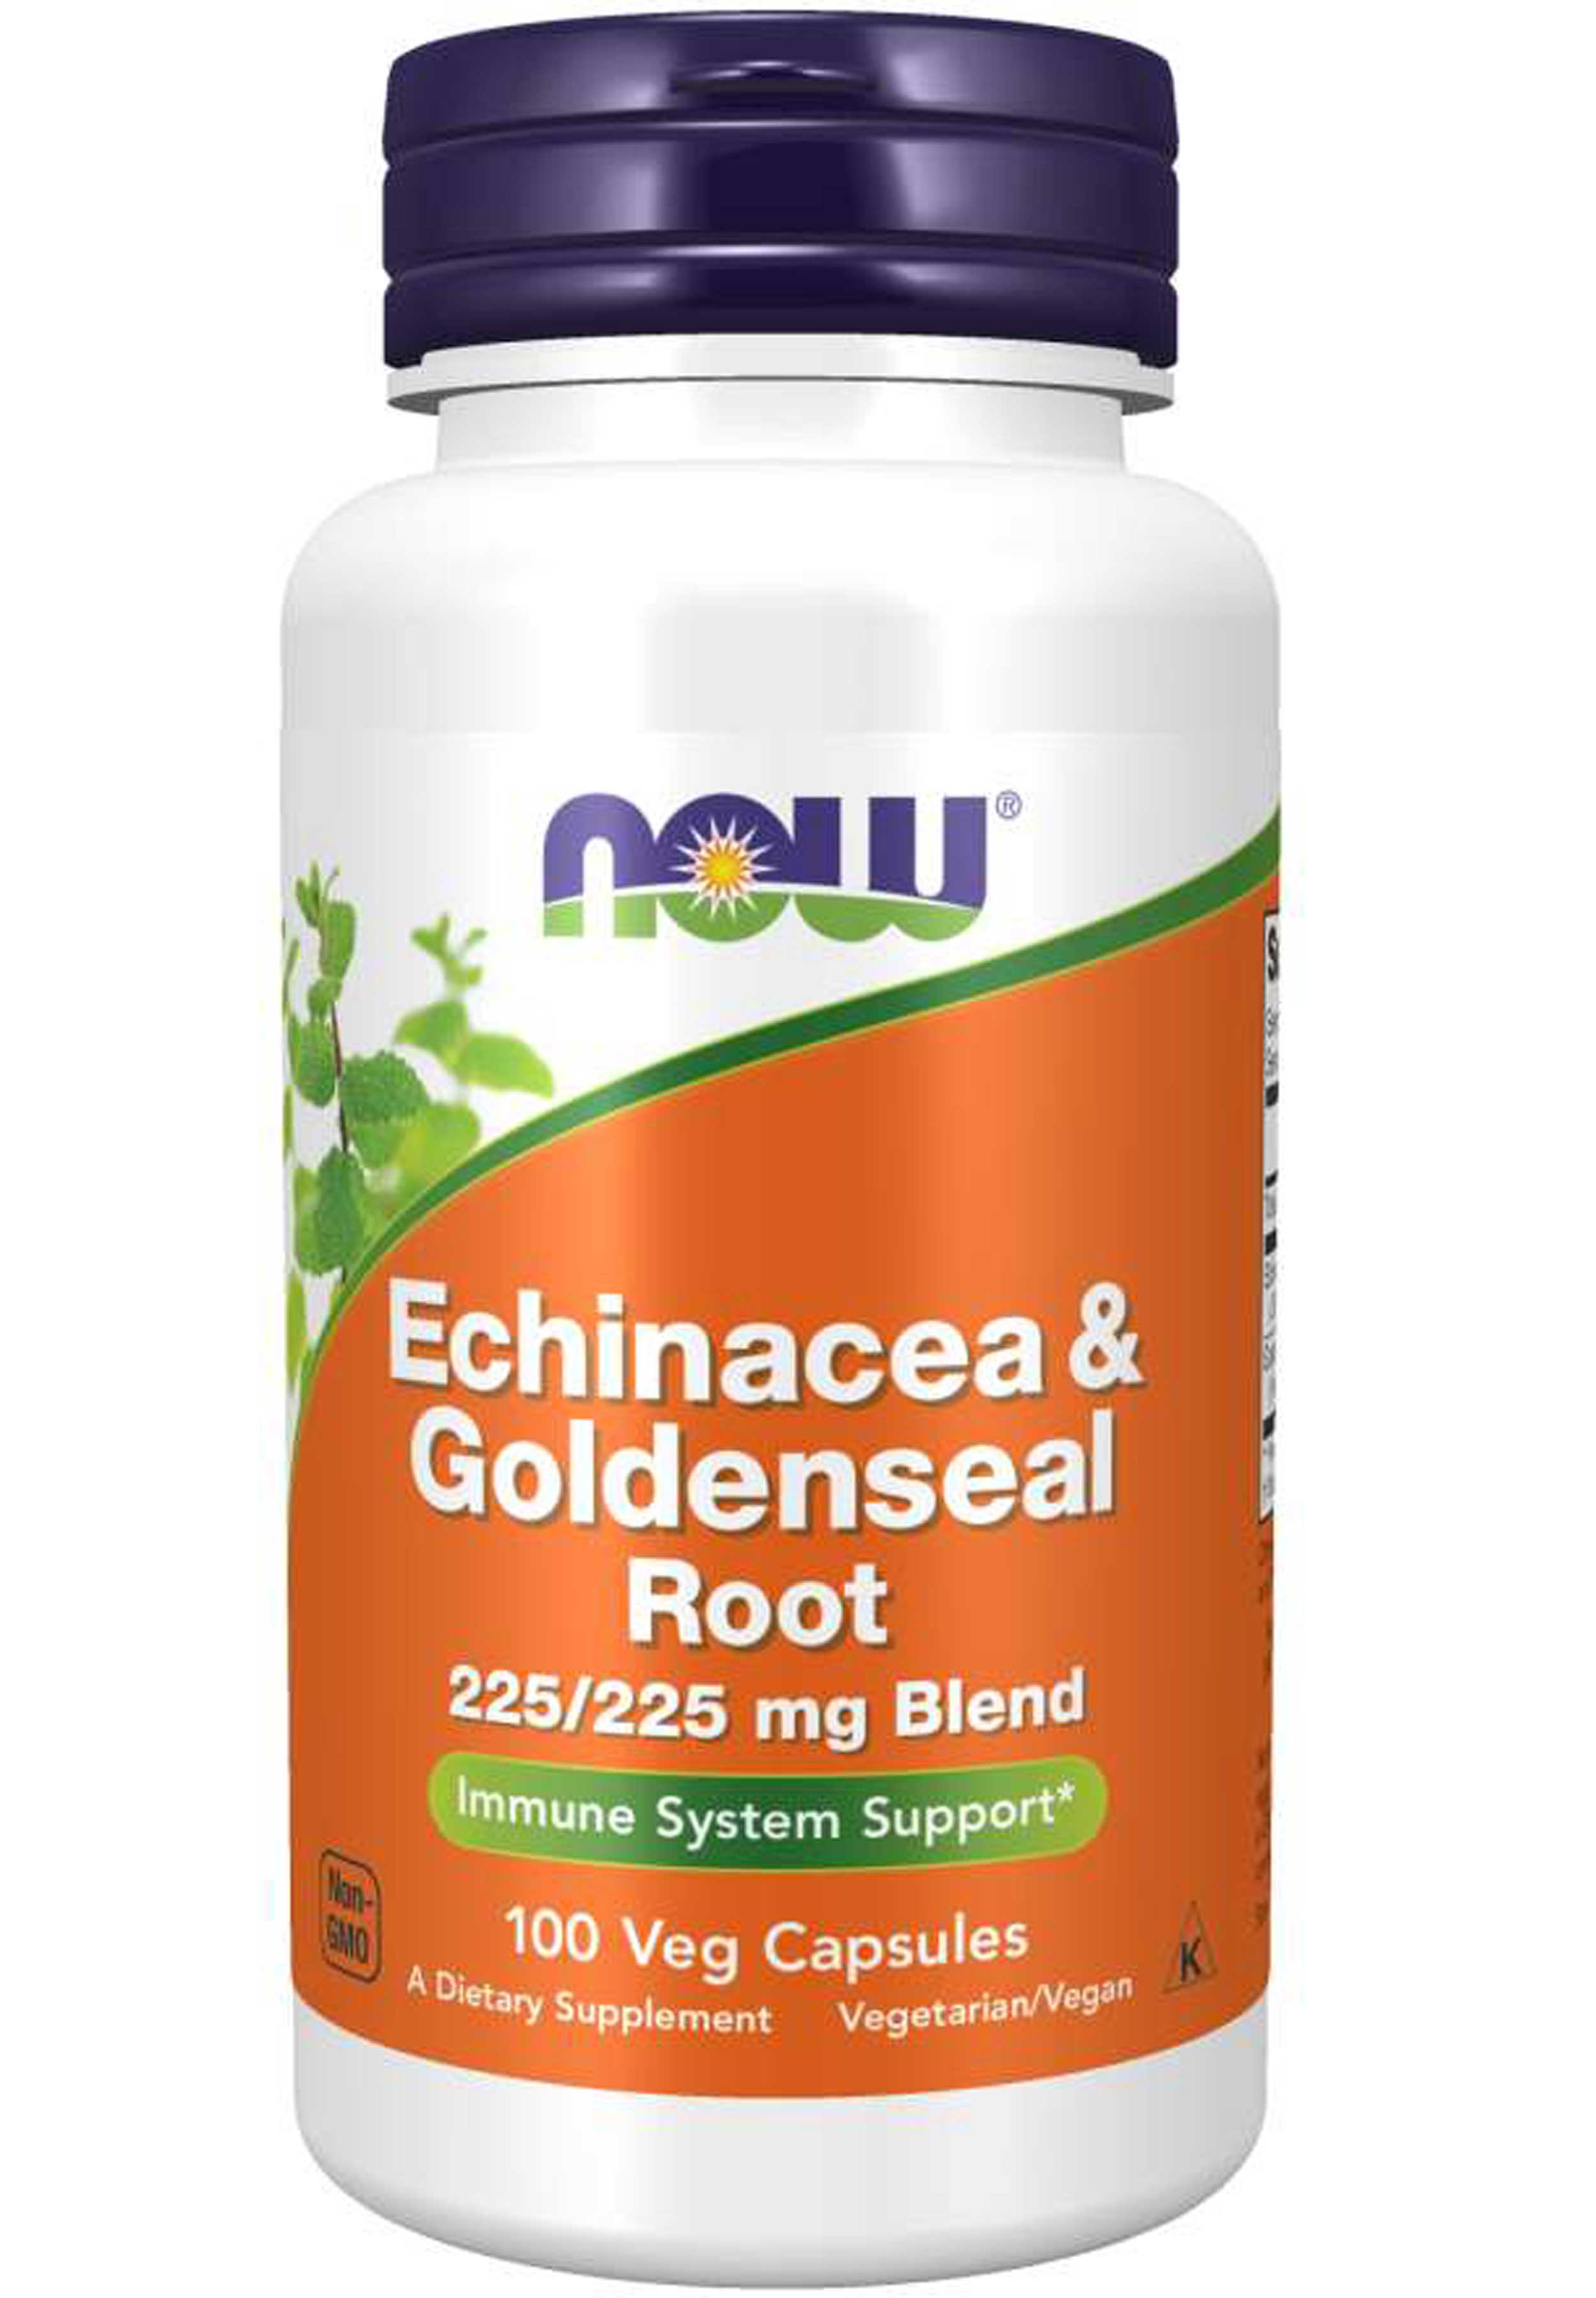 NOW Echinacea & Goldenseal Root